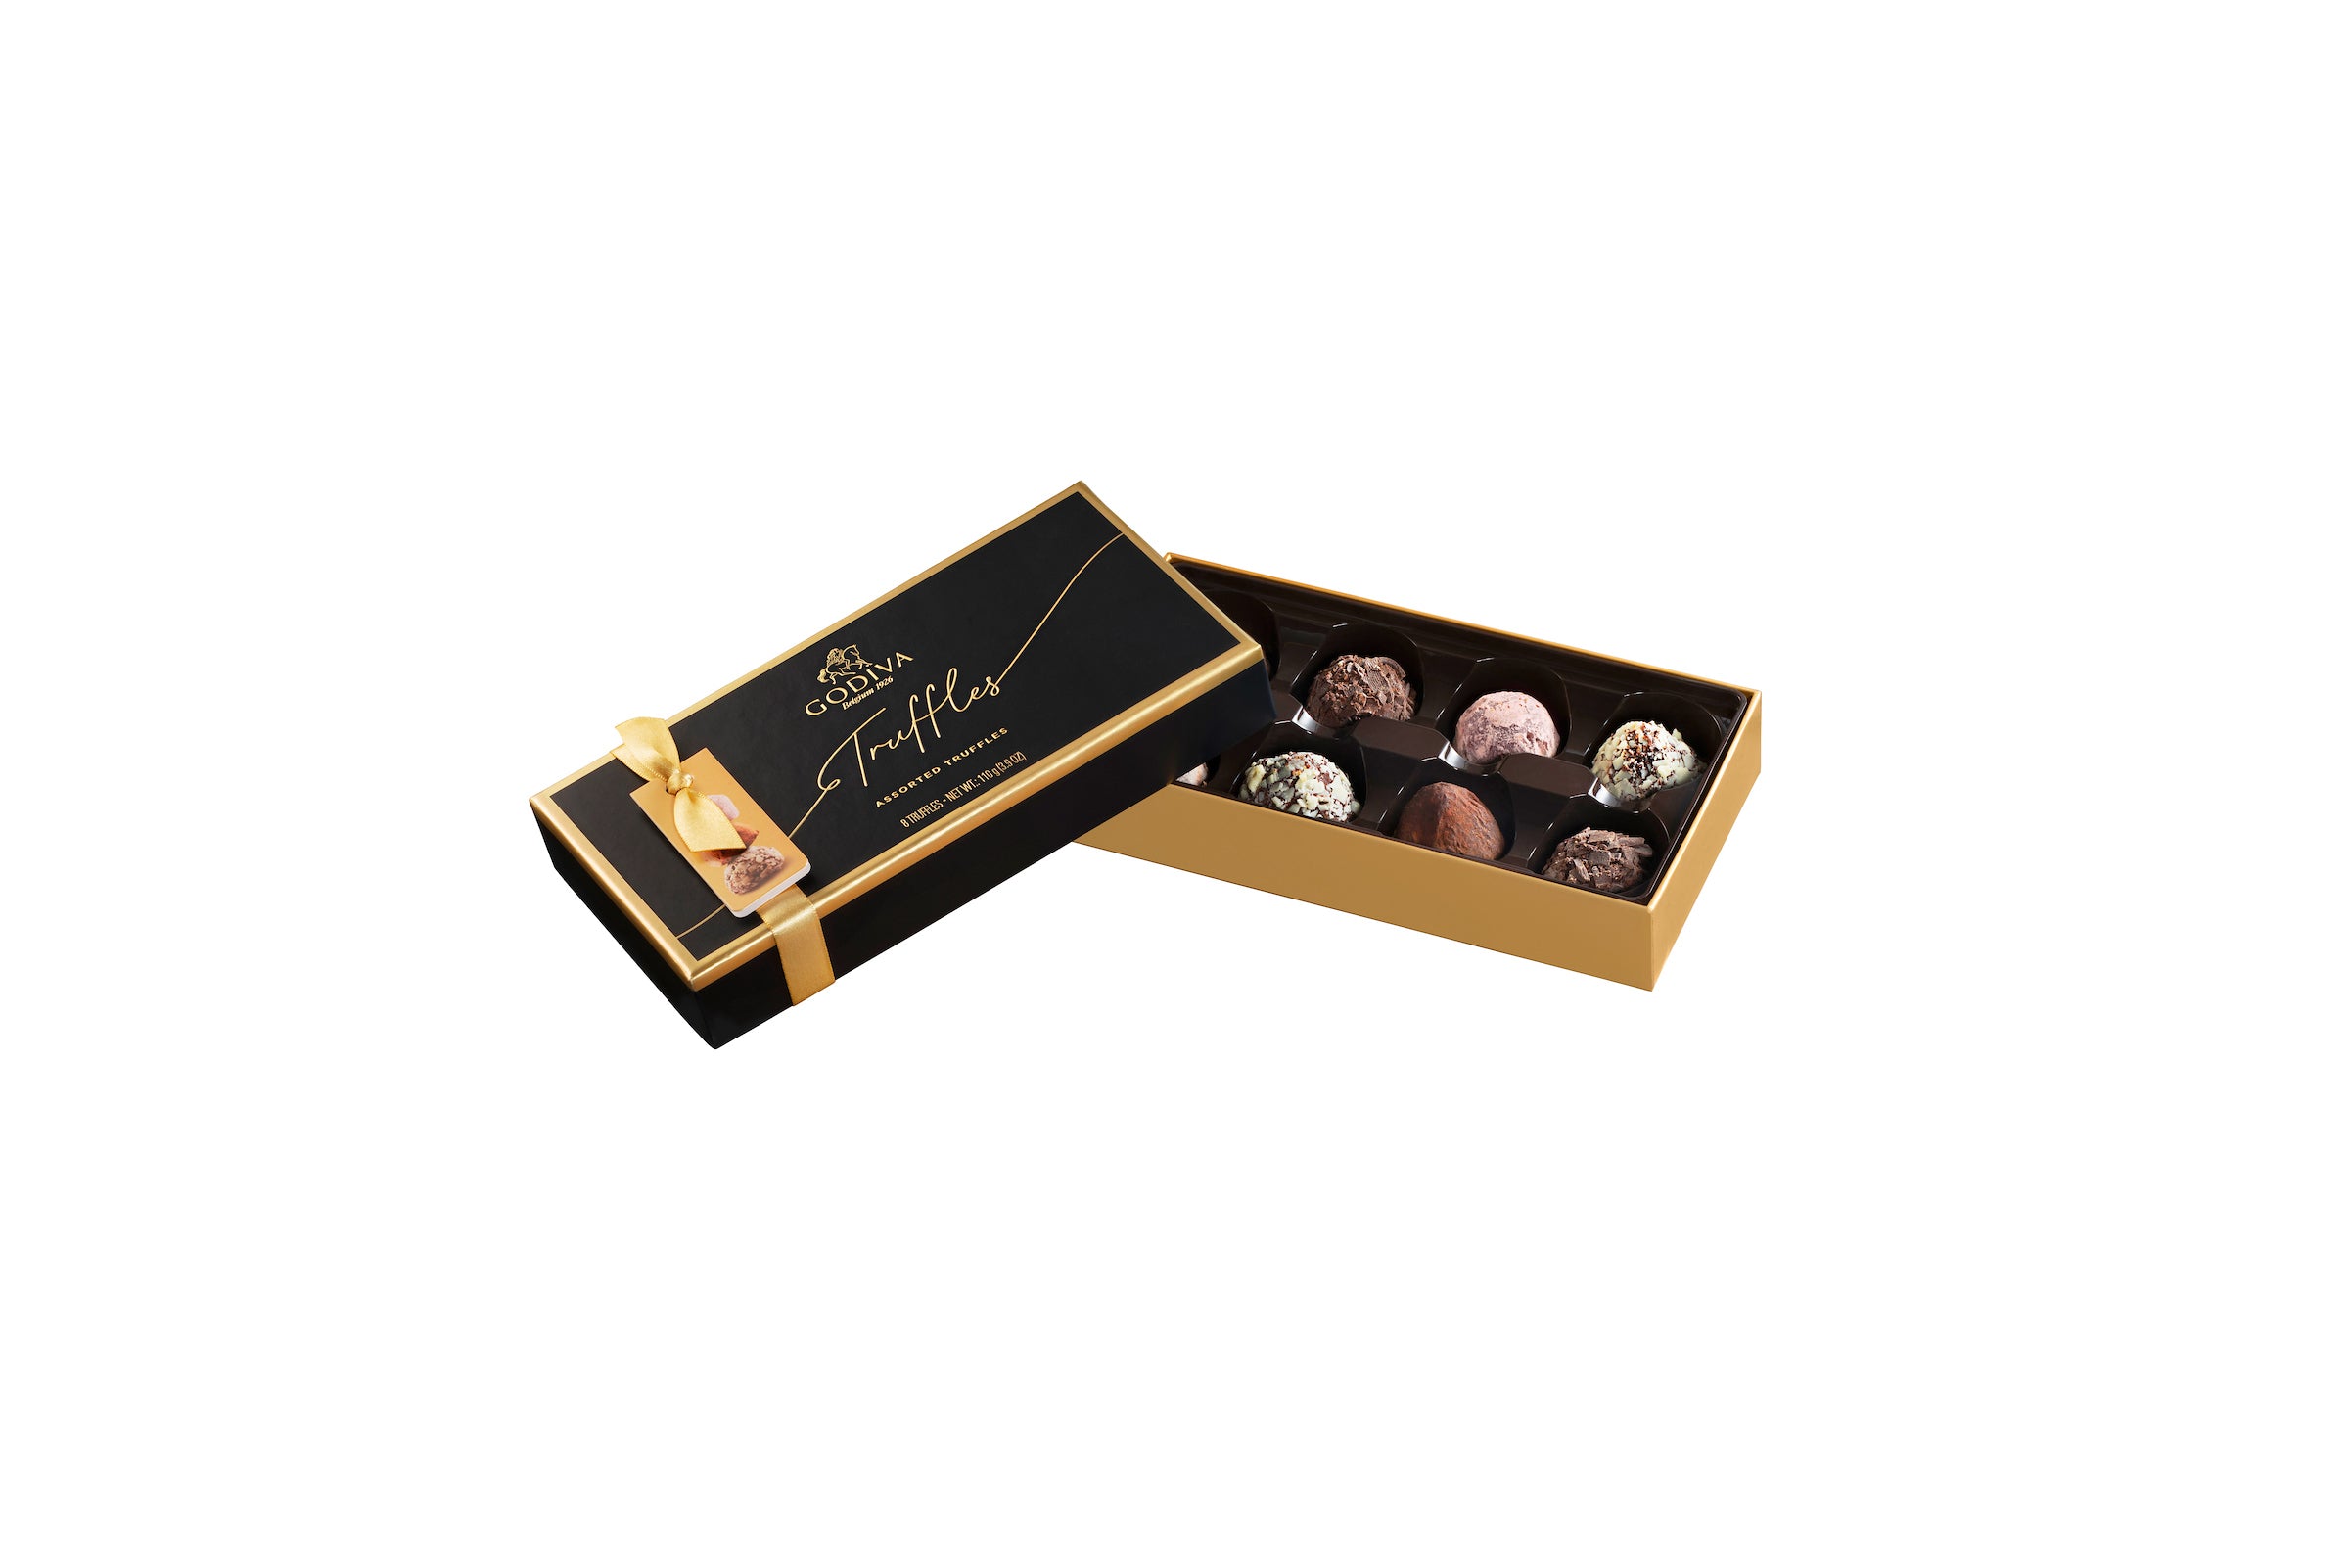 Godiva - Signature Chocolate Truffle Box